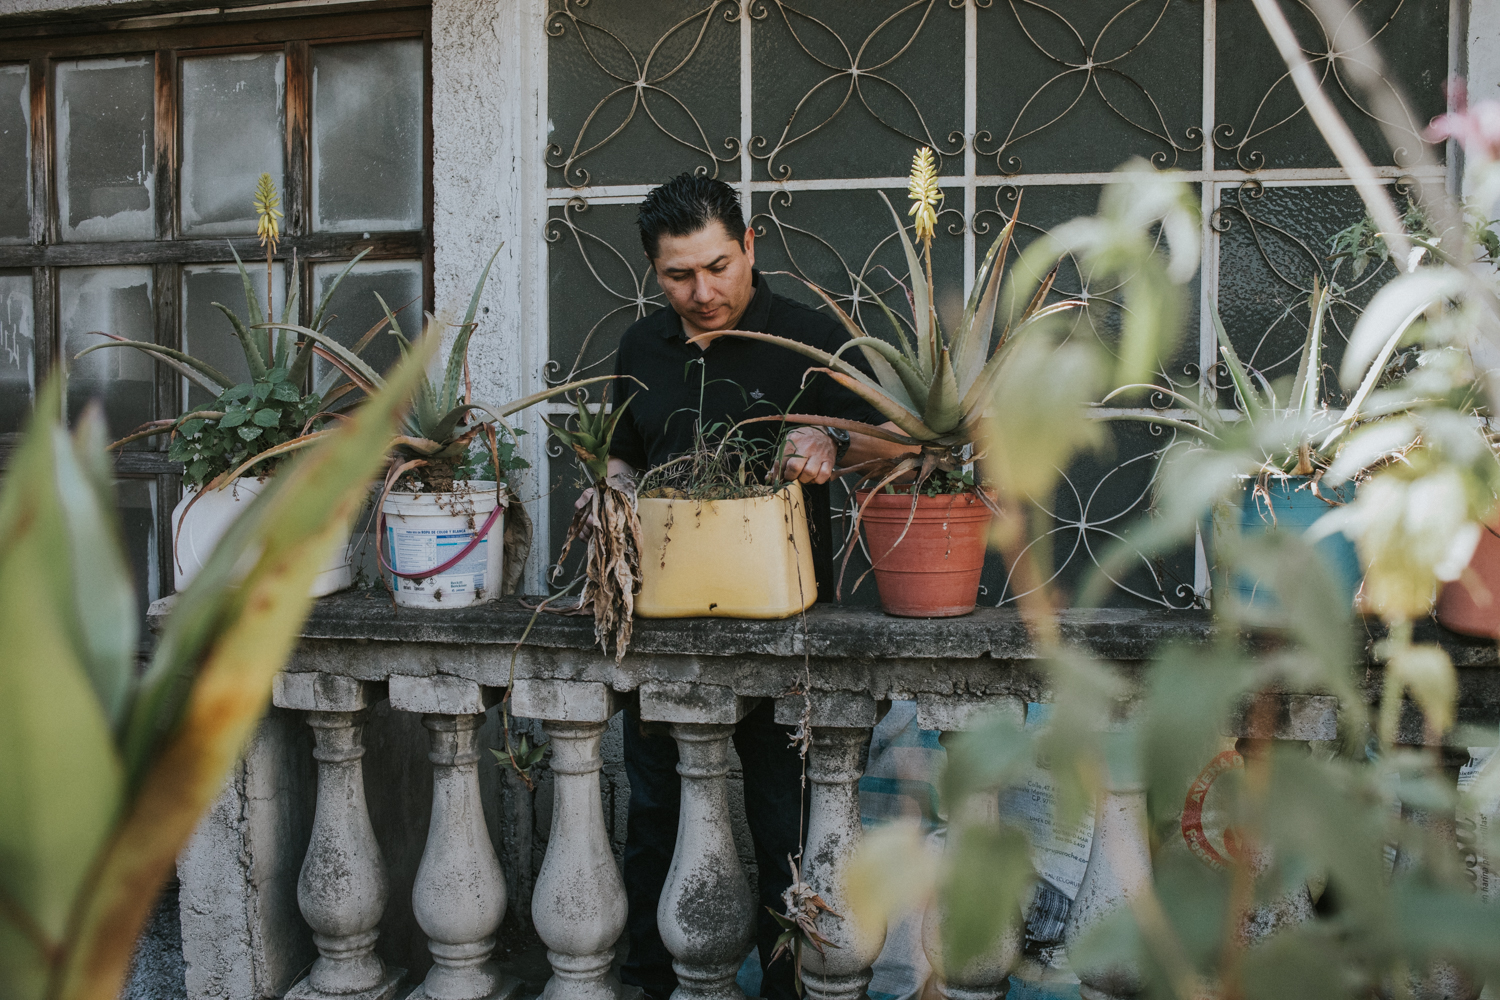 Anfitrion regando las plantas de su casa en Ciudad de Mexico